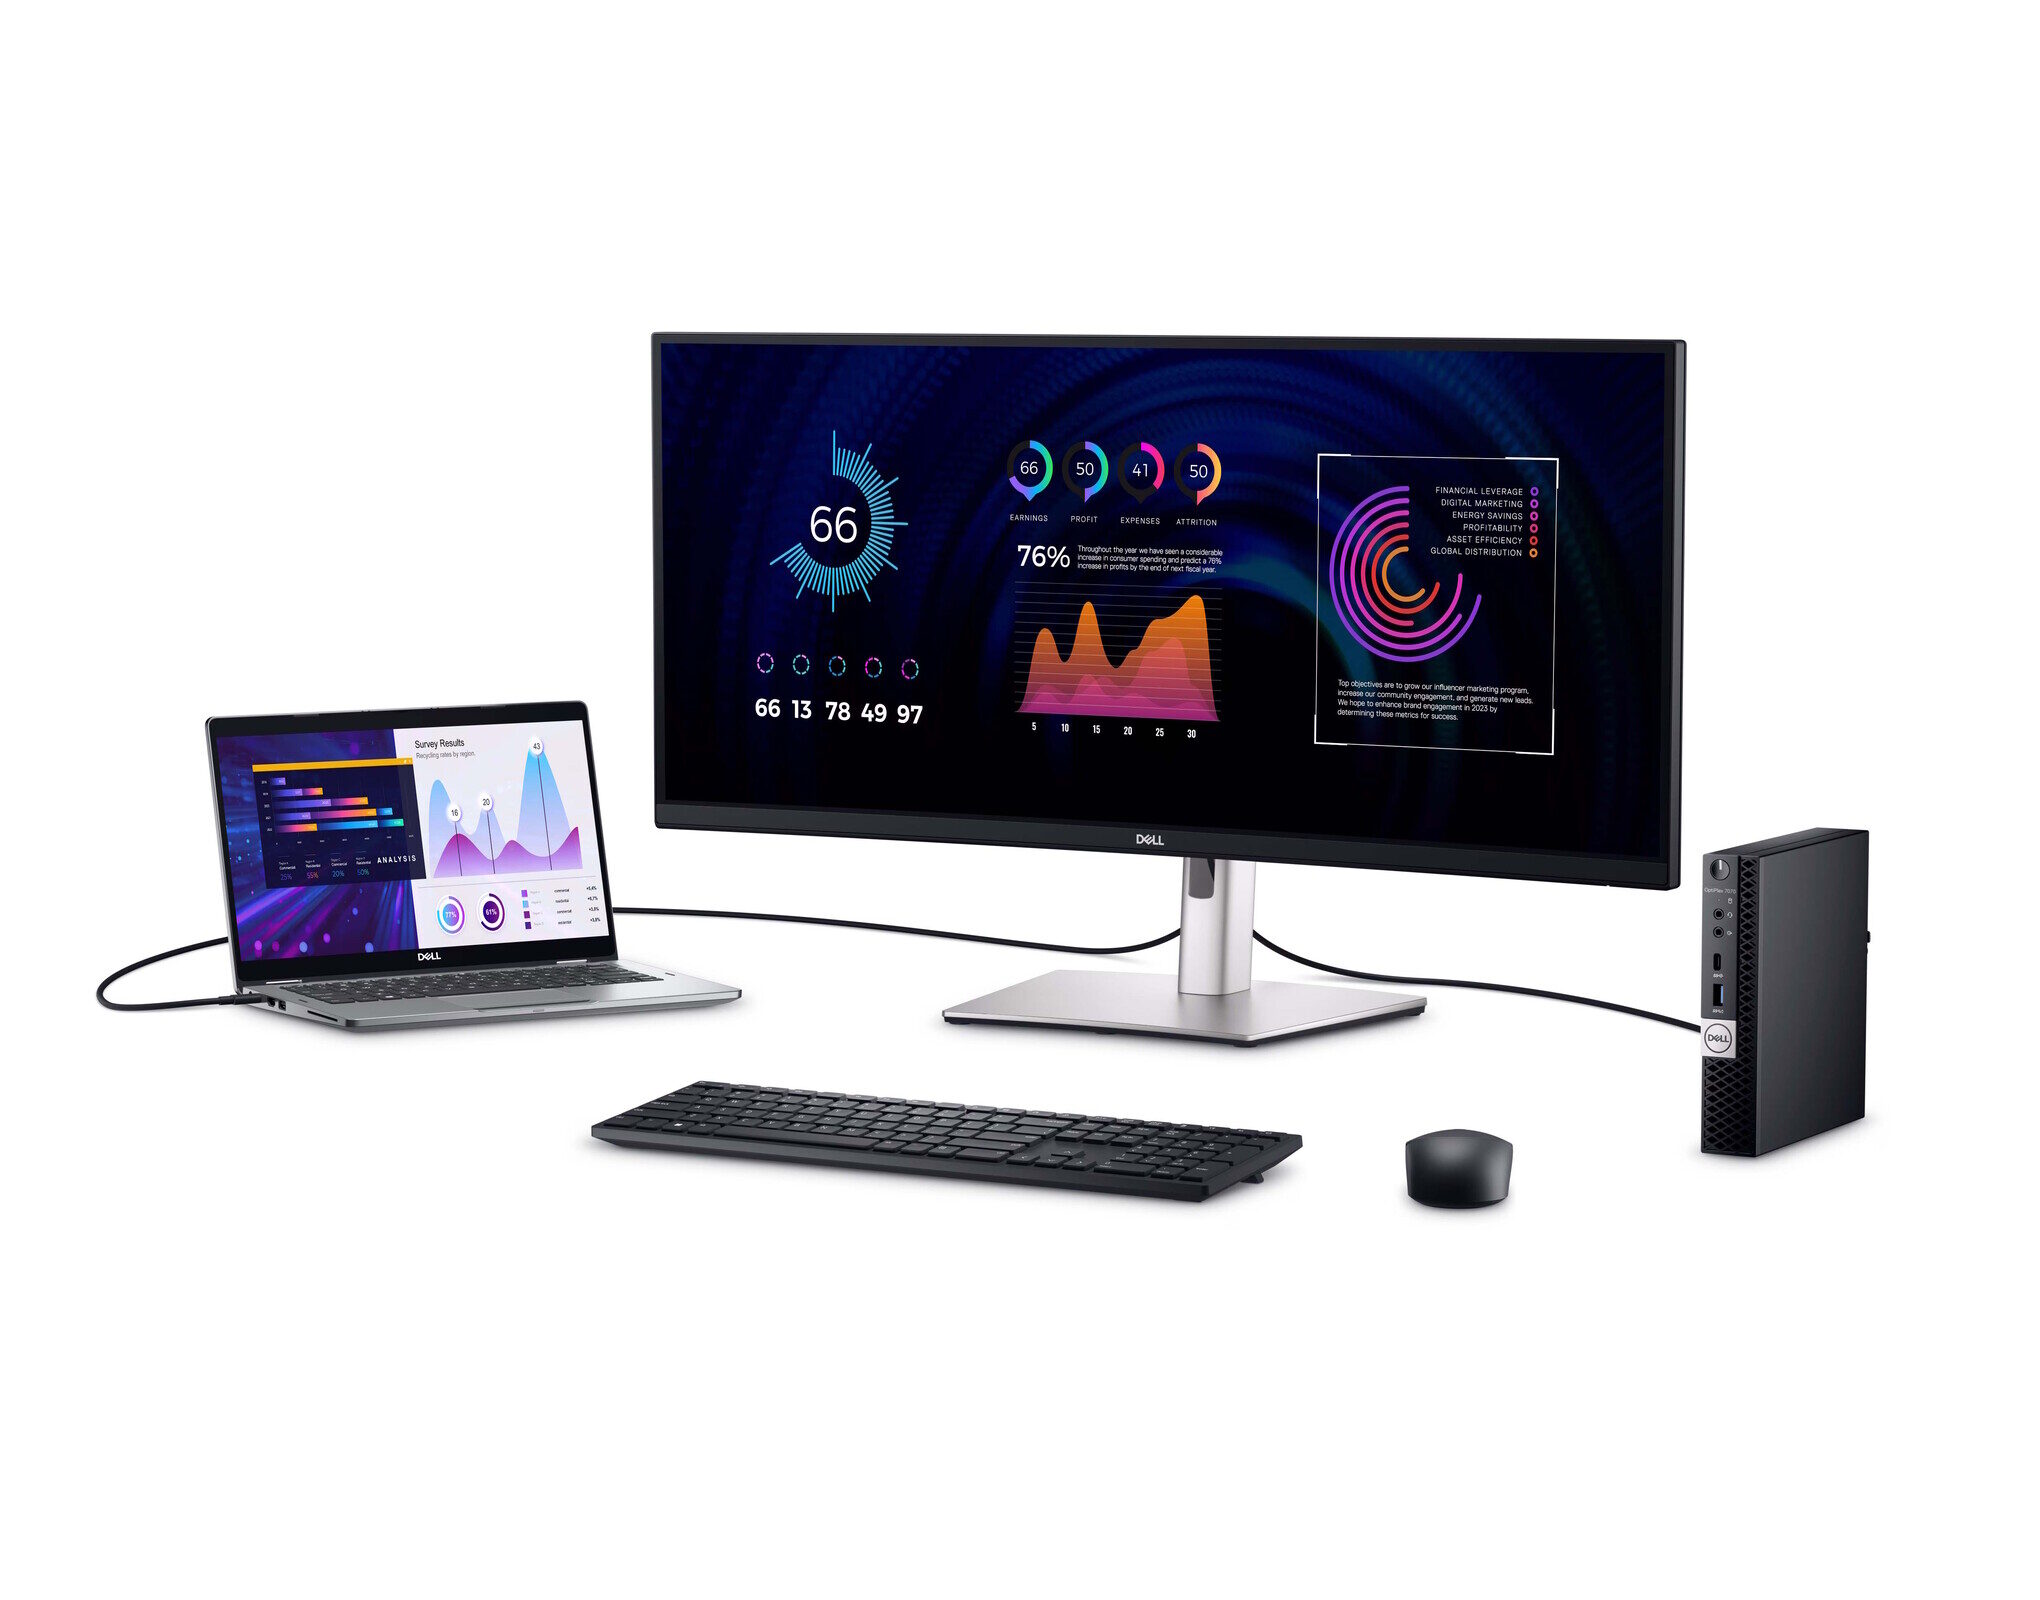 Riesiger Dell-Sale mit günstigen Laptops, Desktop-PCs und Monitoren